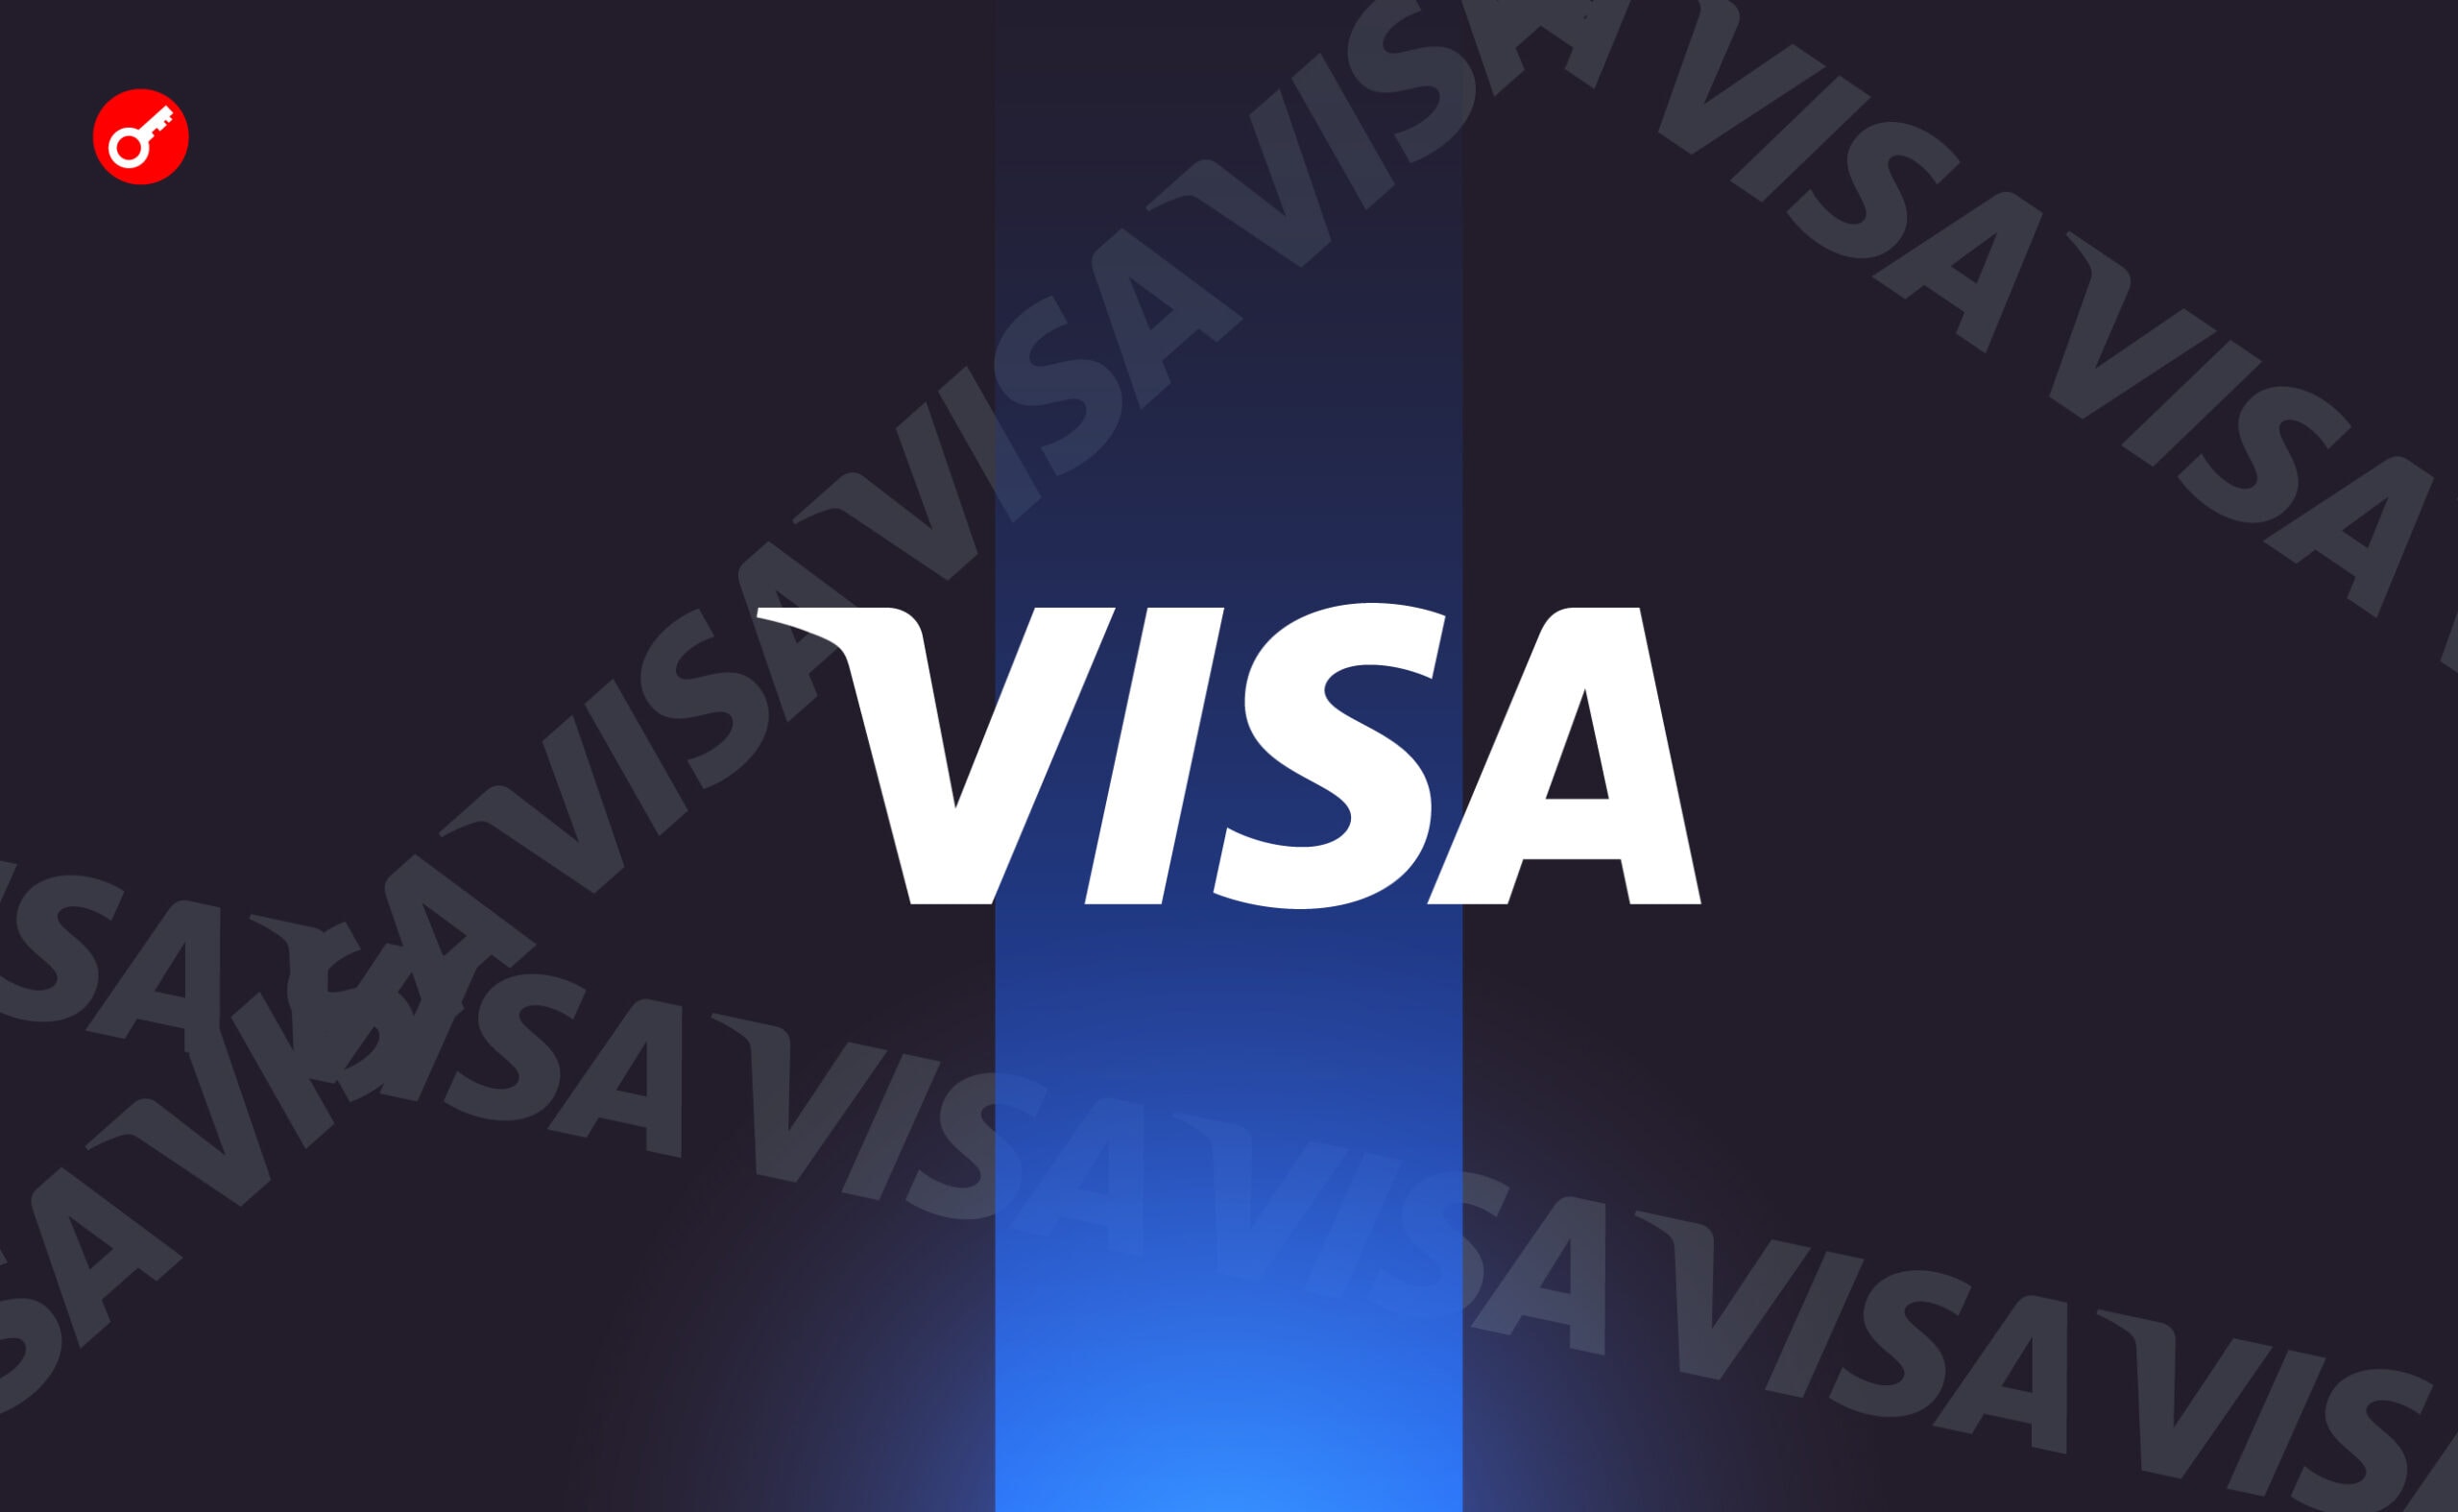 Visa додала розрахунки в стейблкоїні USDС через мережу Solana. Головний колаж новини.